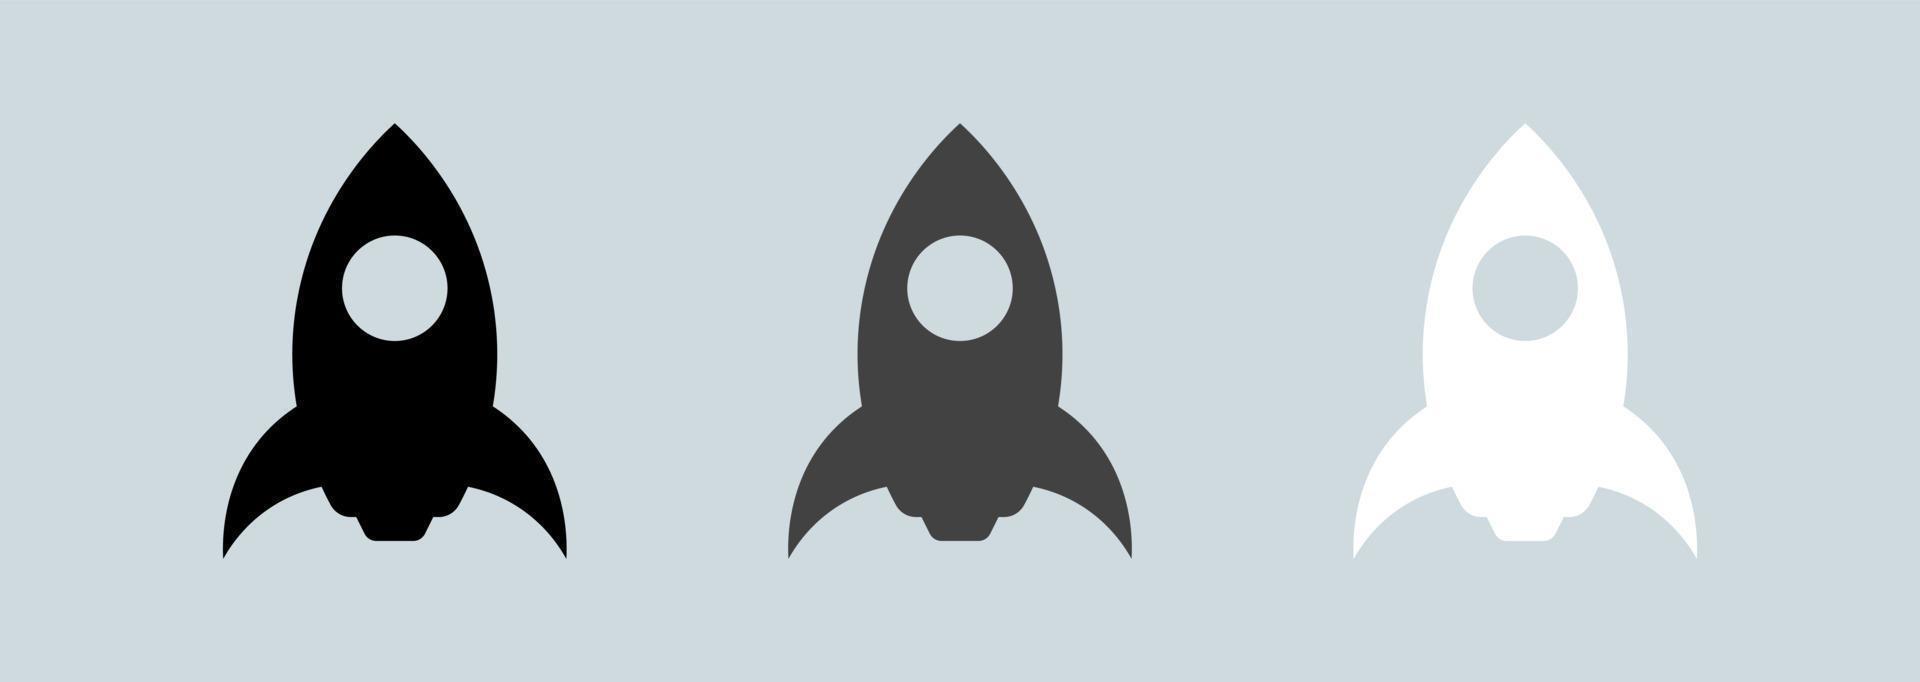 ruimteschip vector pictogram in zwarte en witte kleuren. raket eenvoudige pictogrammenset vector.